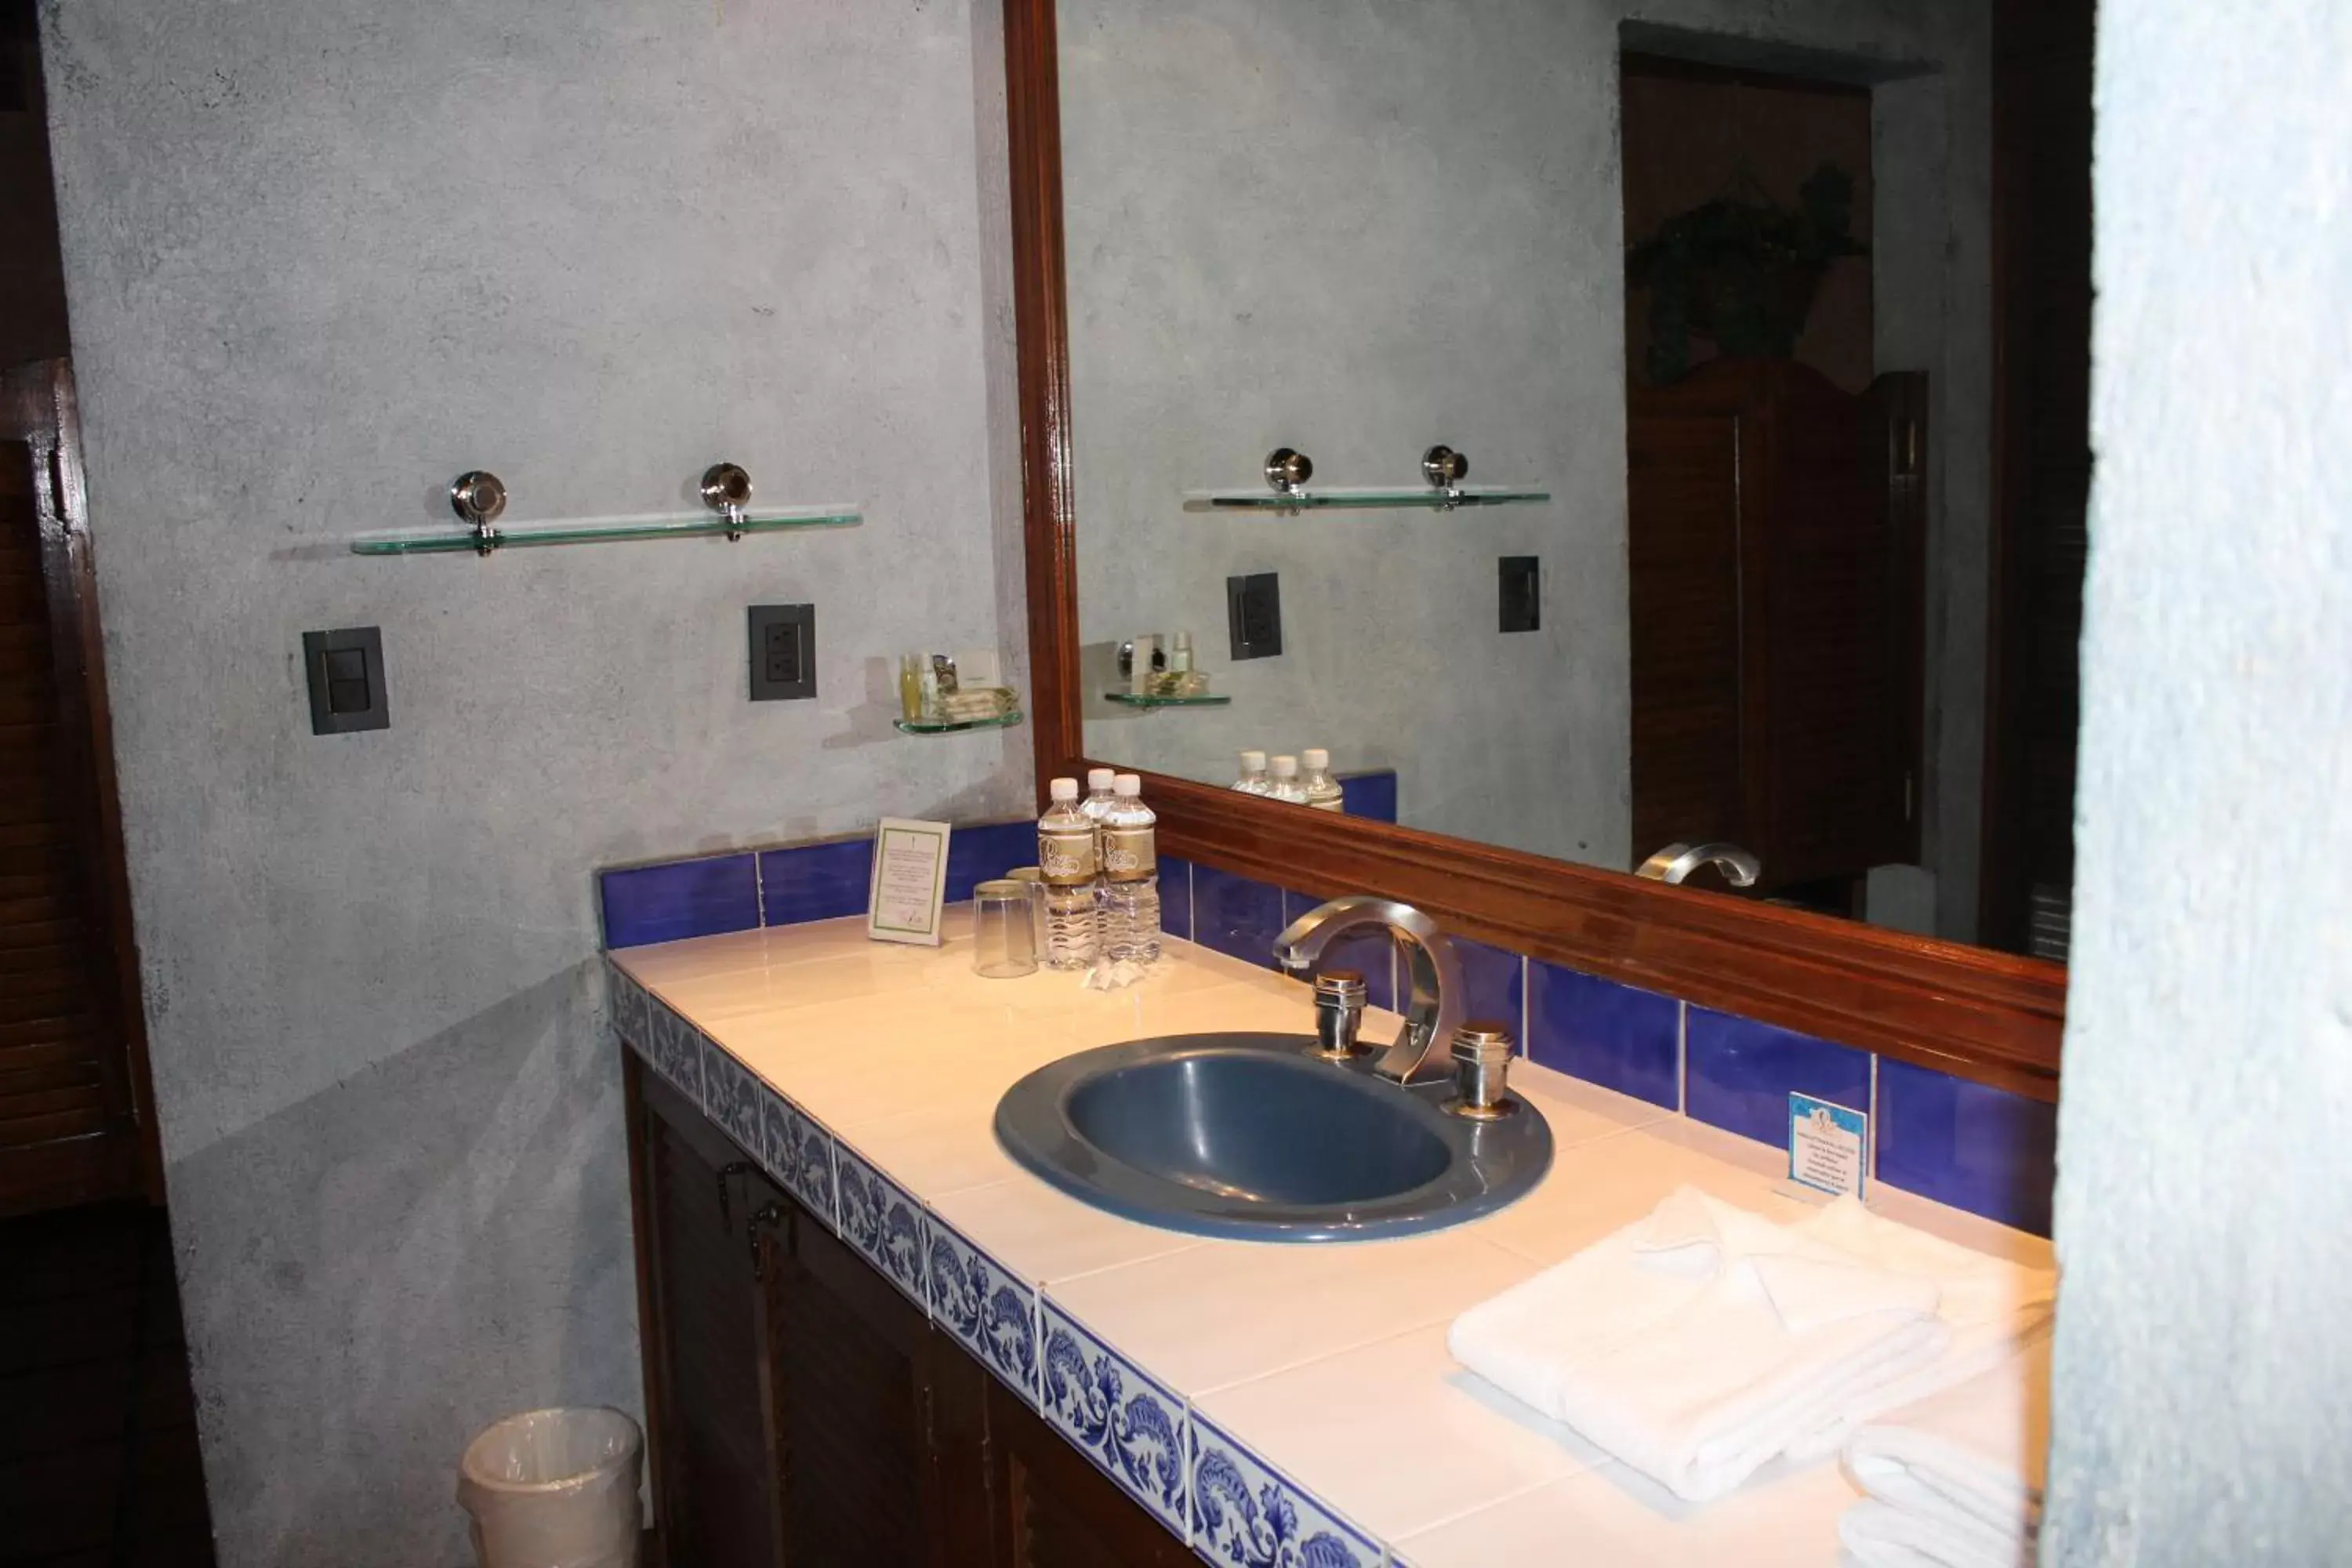 Bathroom in Hotel La Plaza de Tequisquiapan